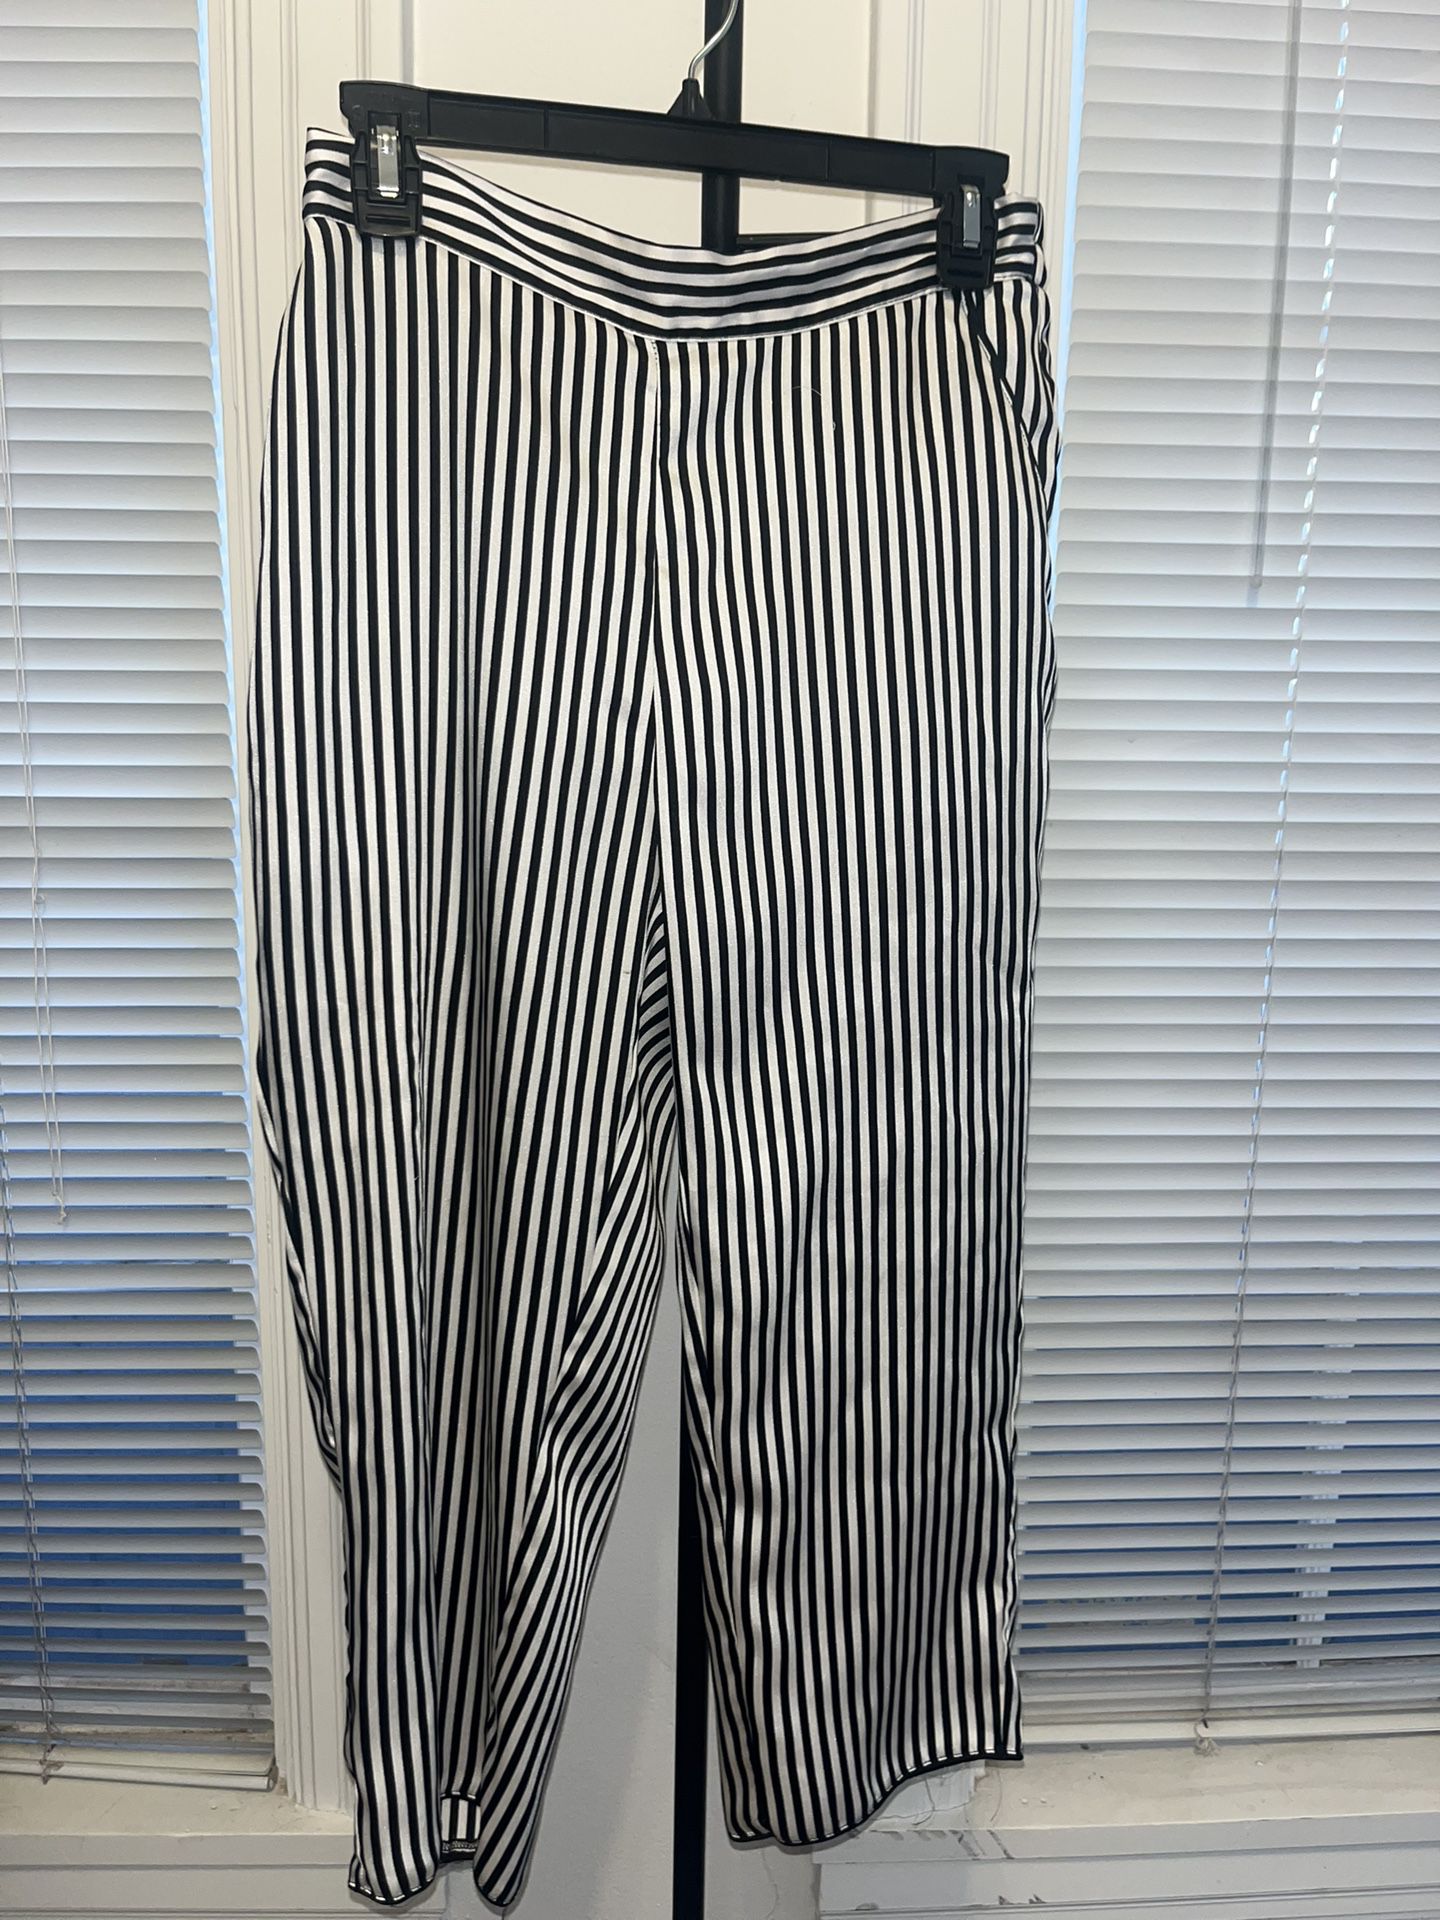 Black & White Striped Dress Pants 